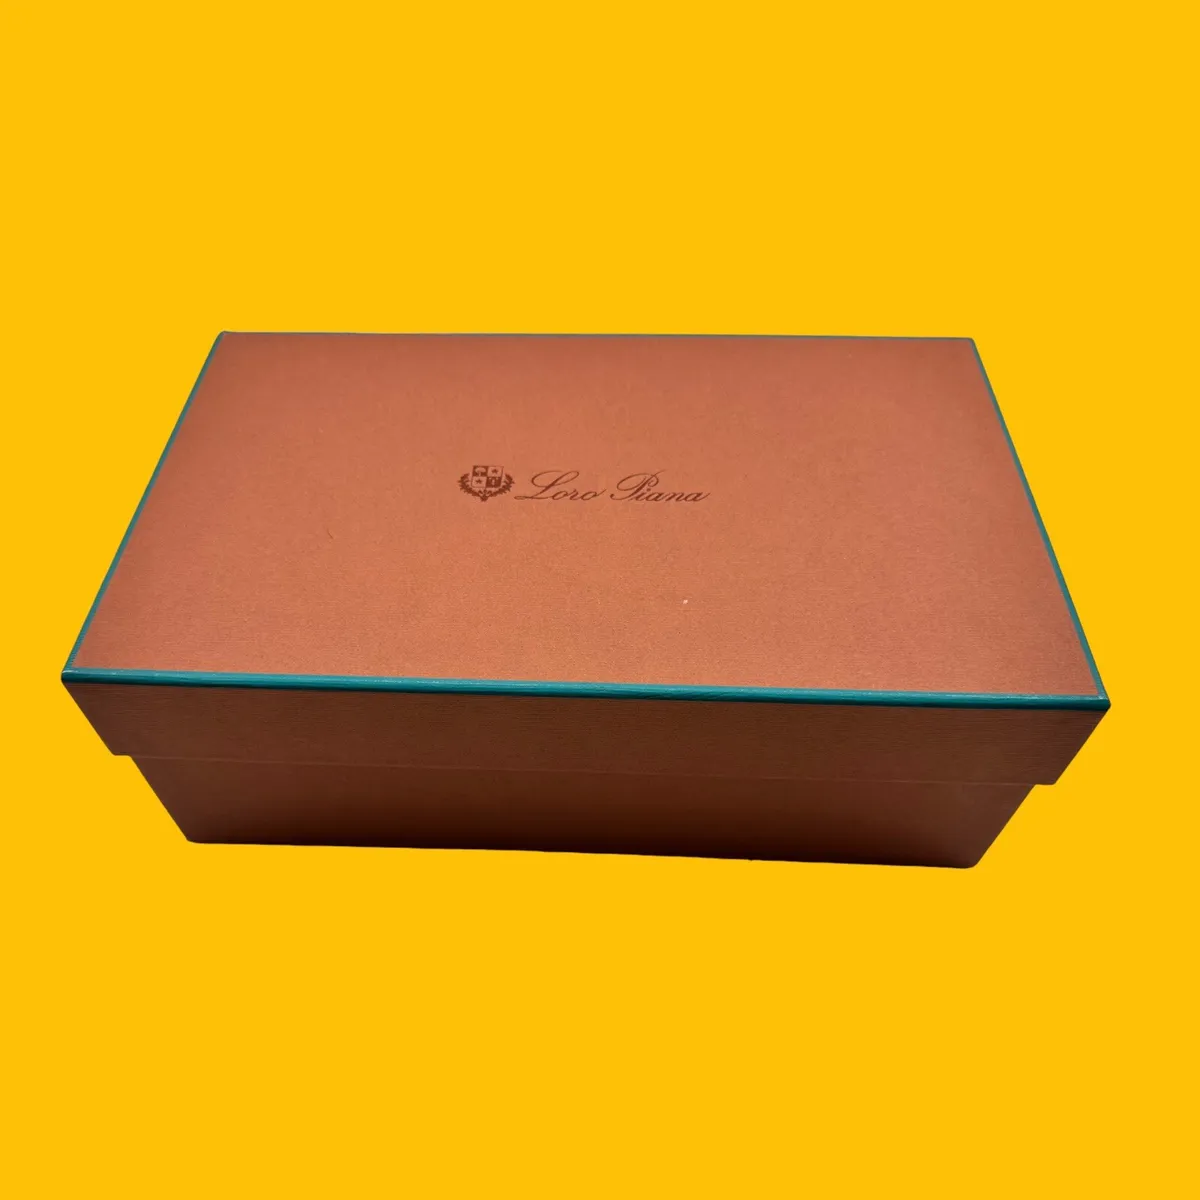 Loro Piana, Storage & Organization, Loro Piana Gift Shoe Box Empty Approx  3 12 X 7 12 X 5